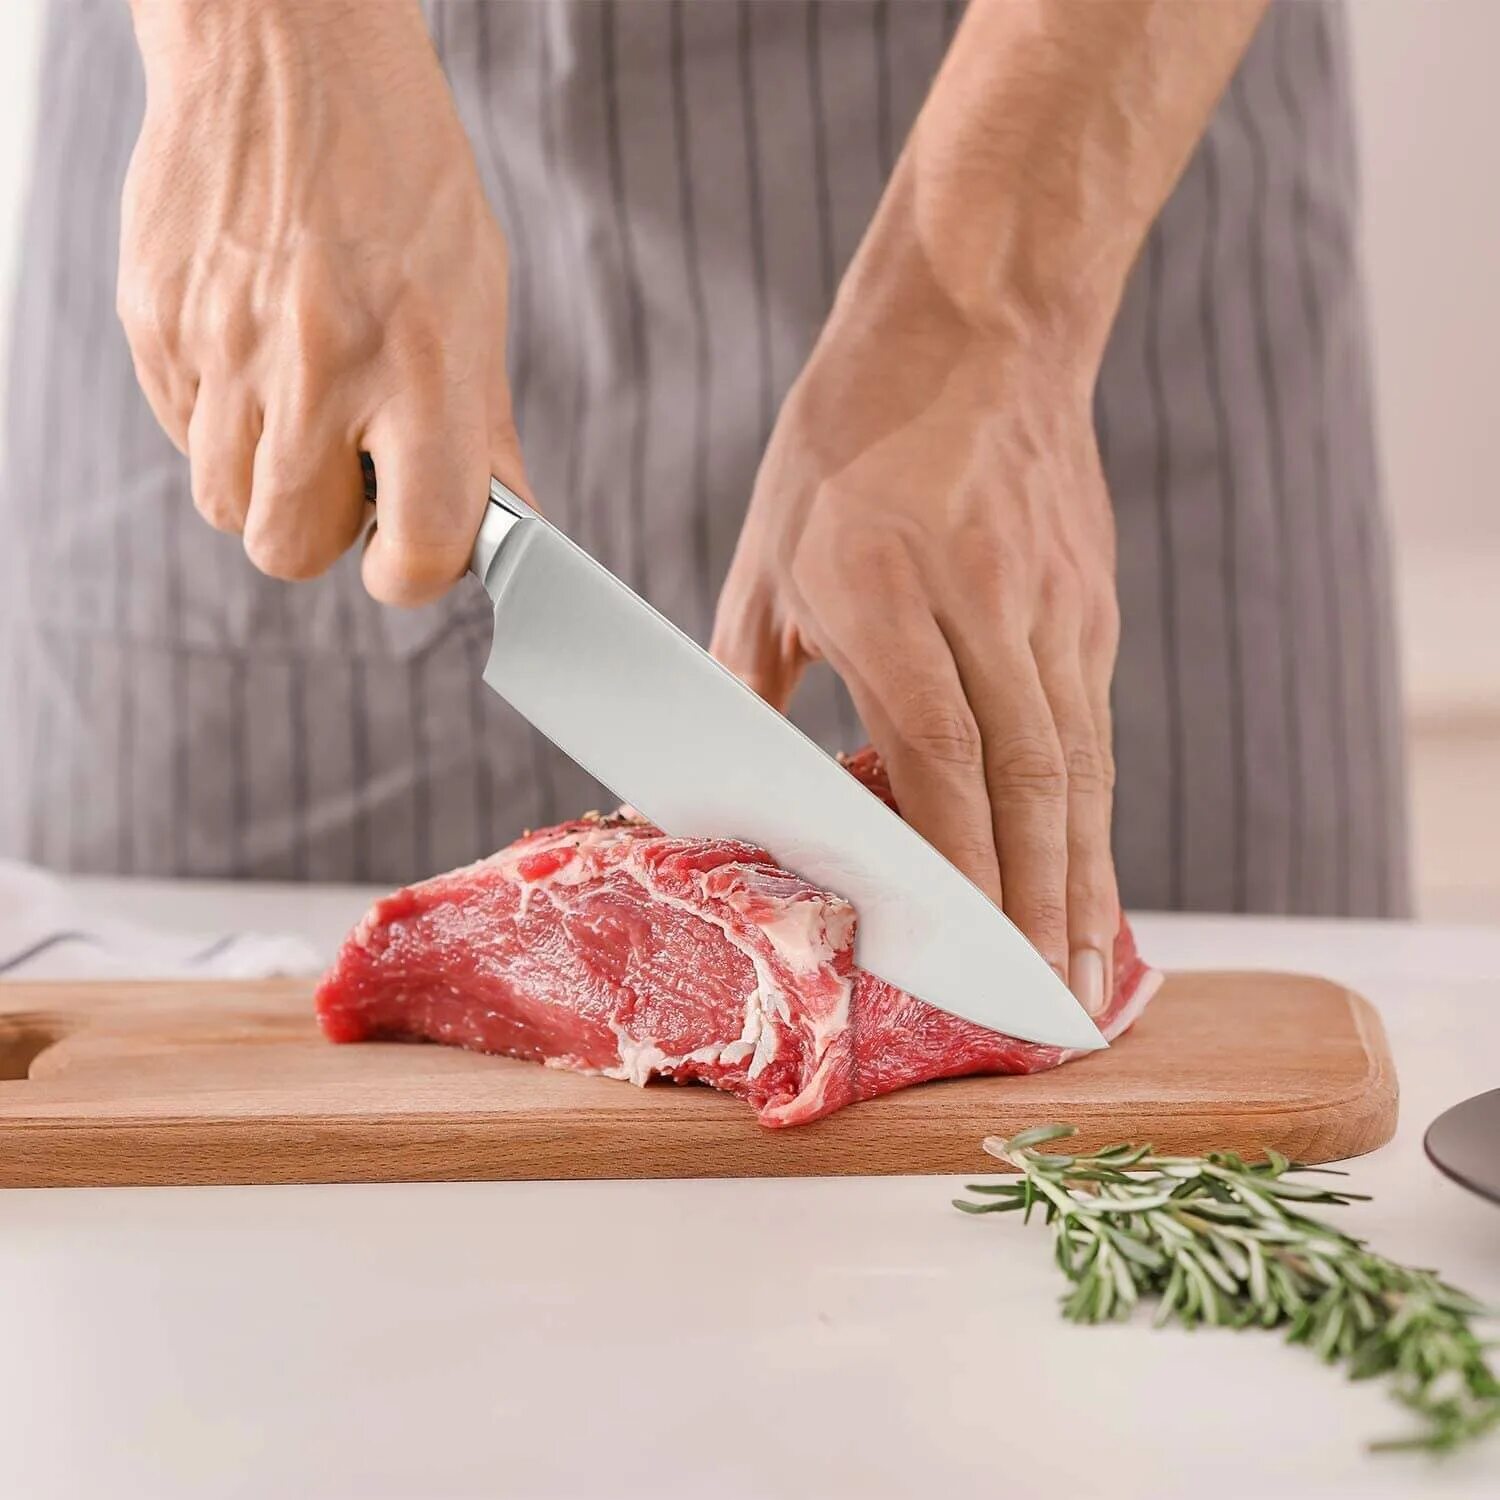 Нож для сырого мяса общепит. К чему снится резать людей